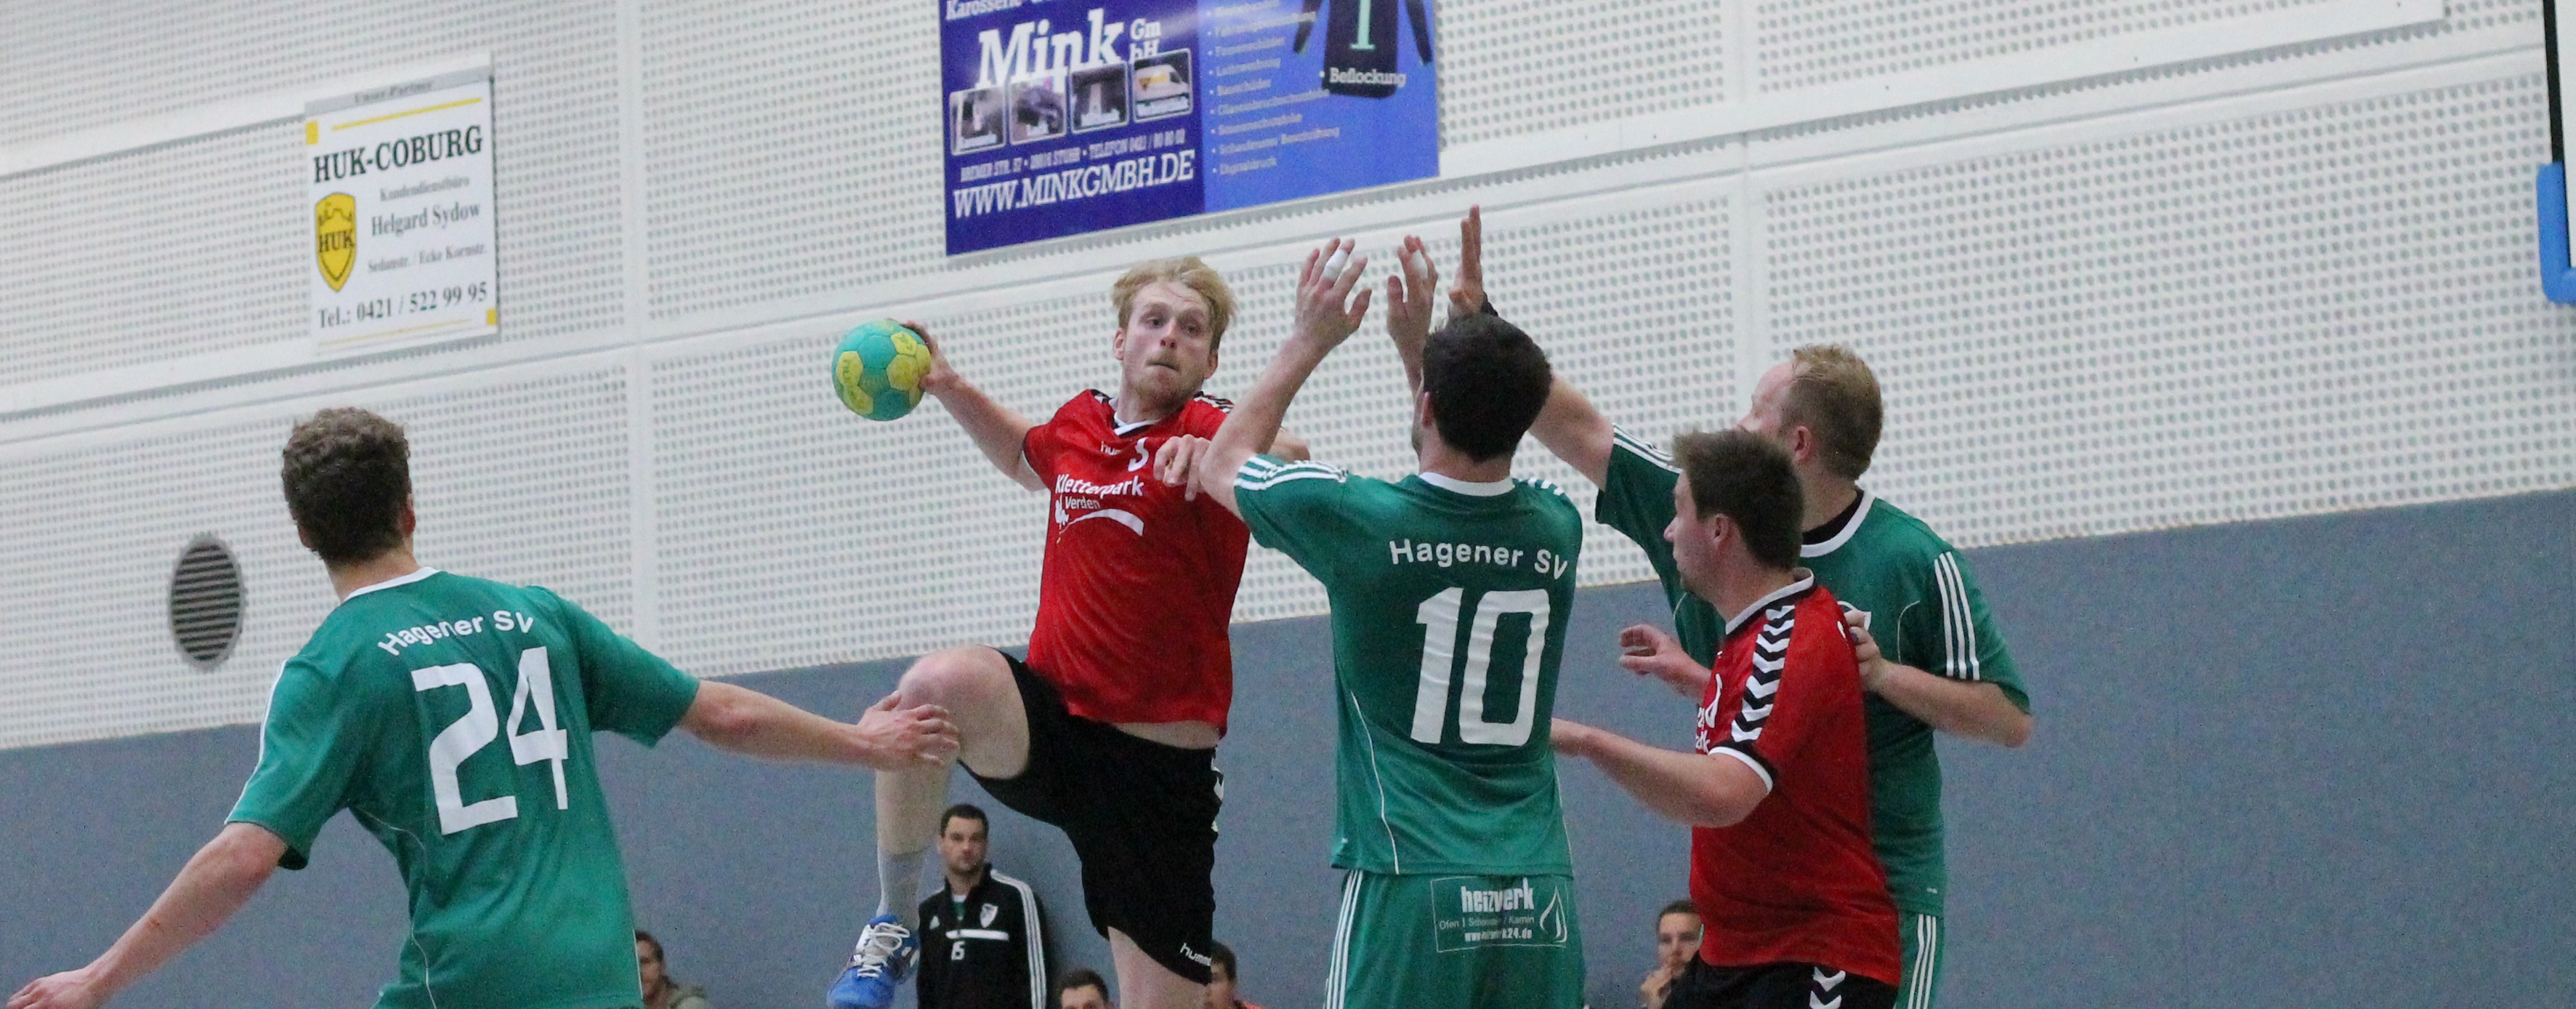 Handballkrimi zum Saisonstart – Punkte in den letzten Sekunden verloren